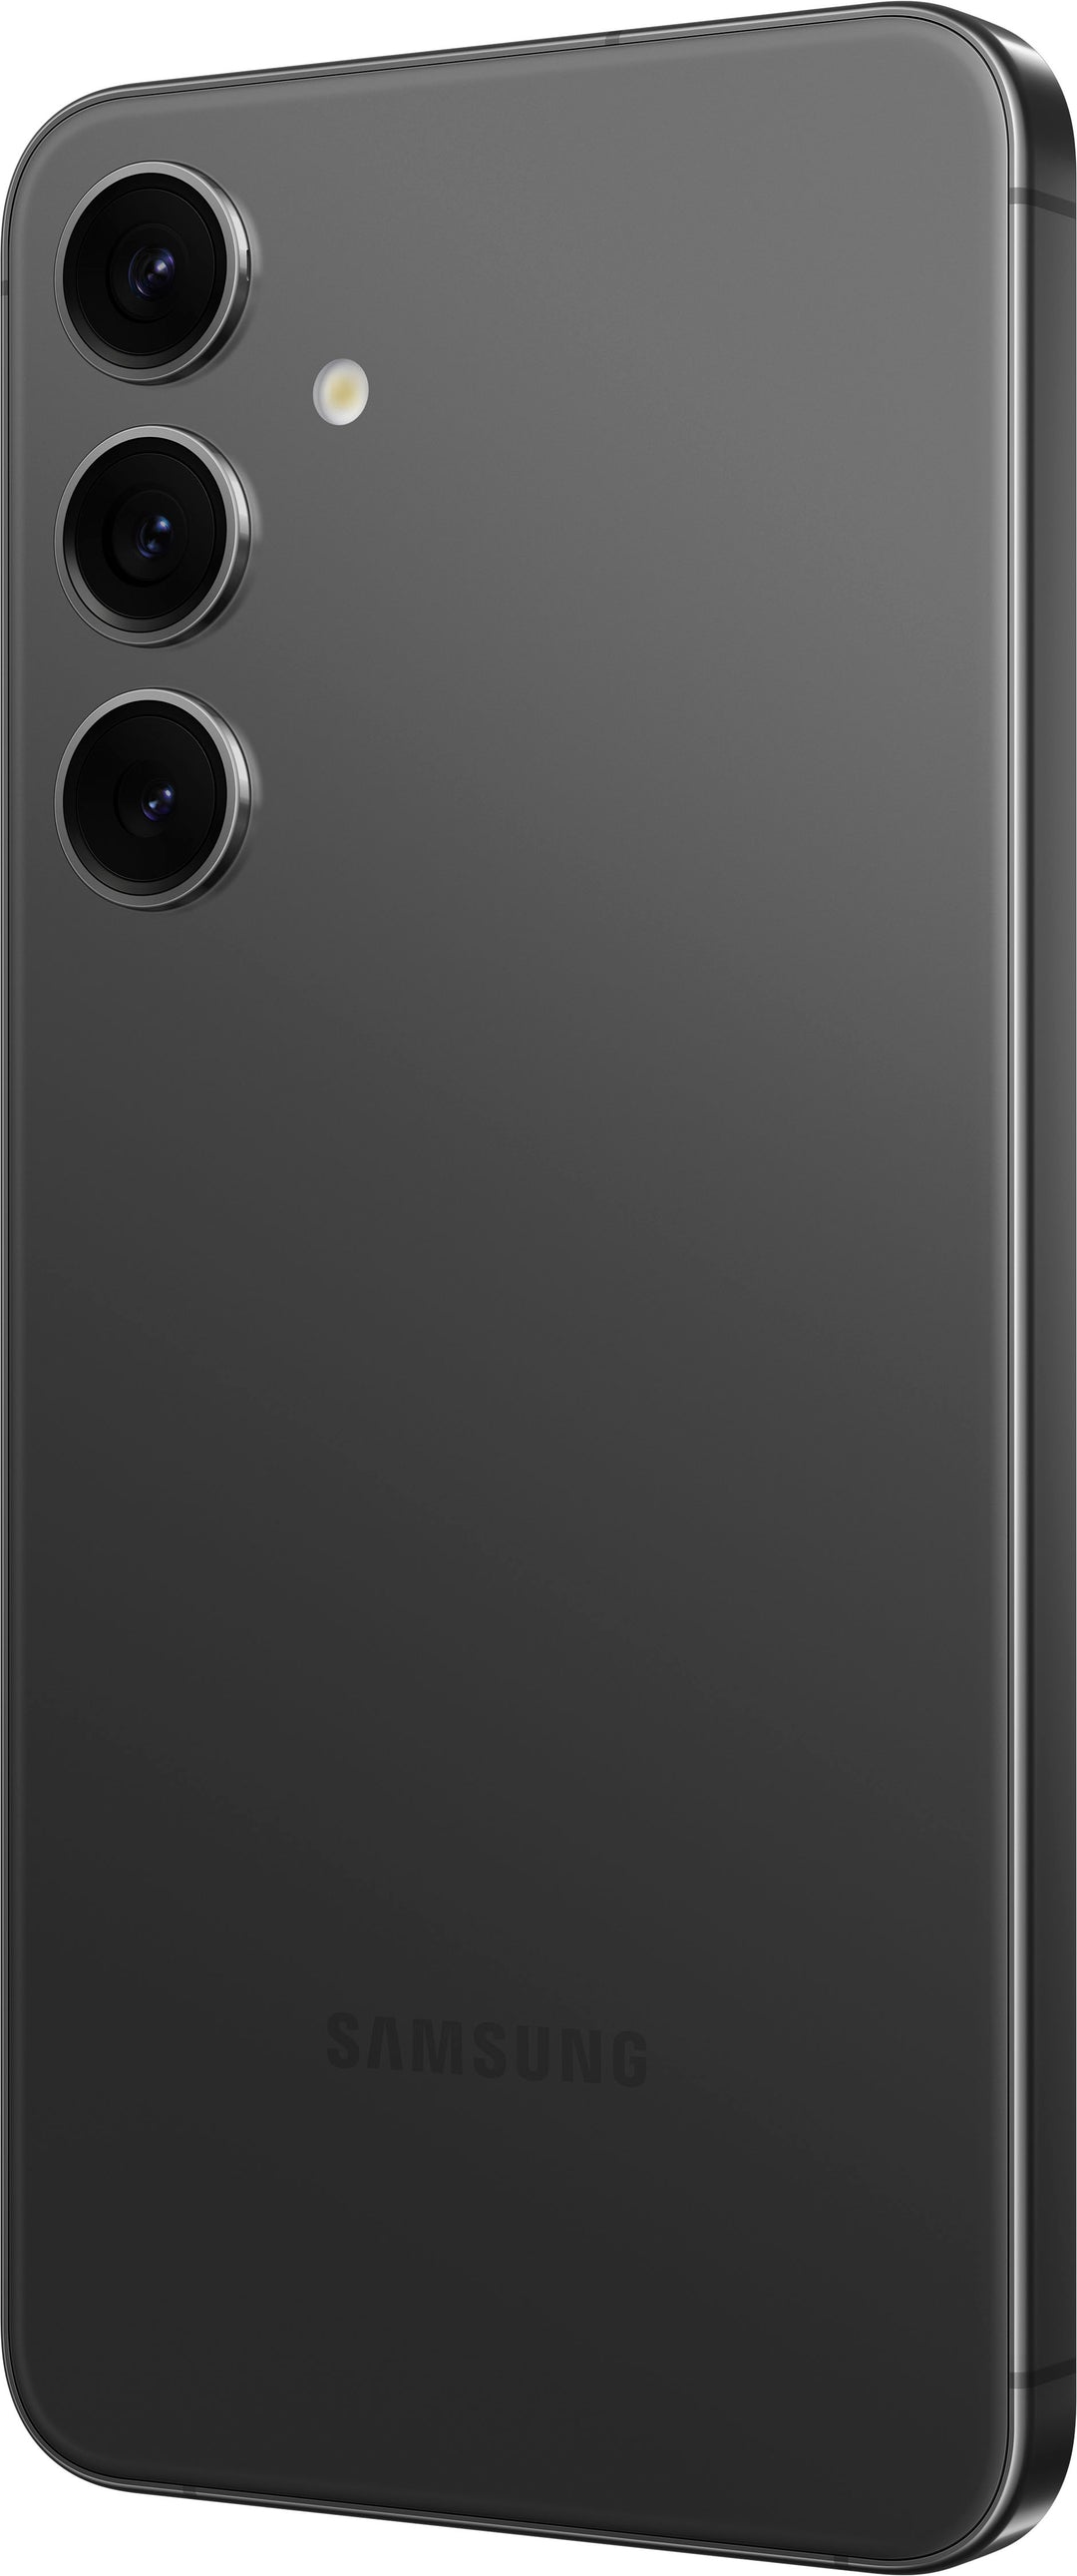 Samsung - Galaxy S24+ 512GB - Onyx Black (Verizon)_5